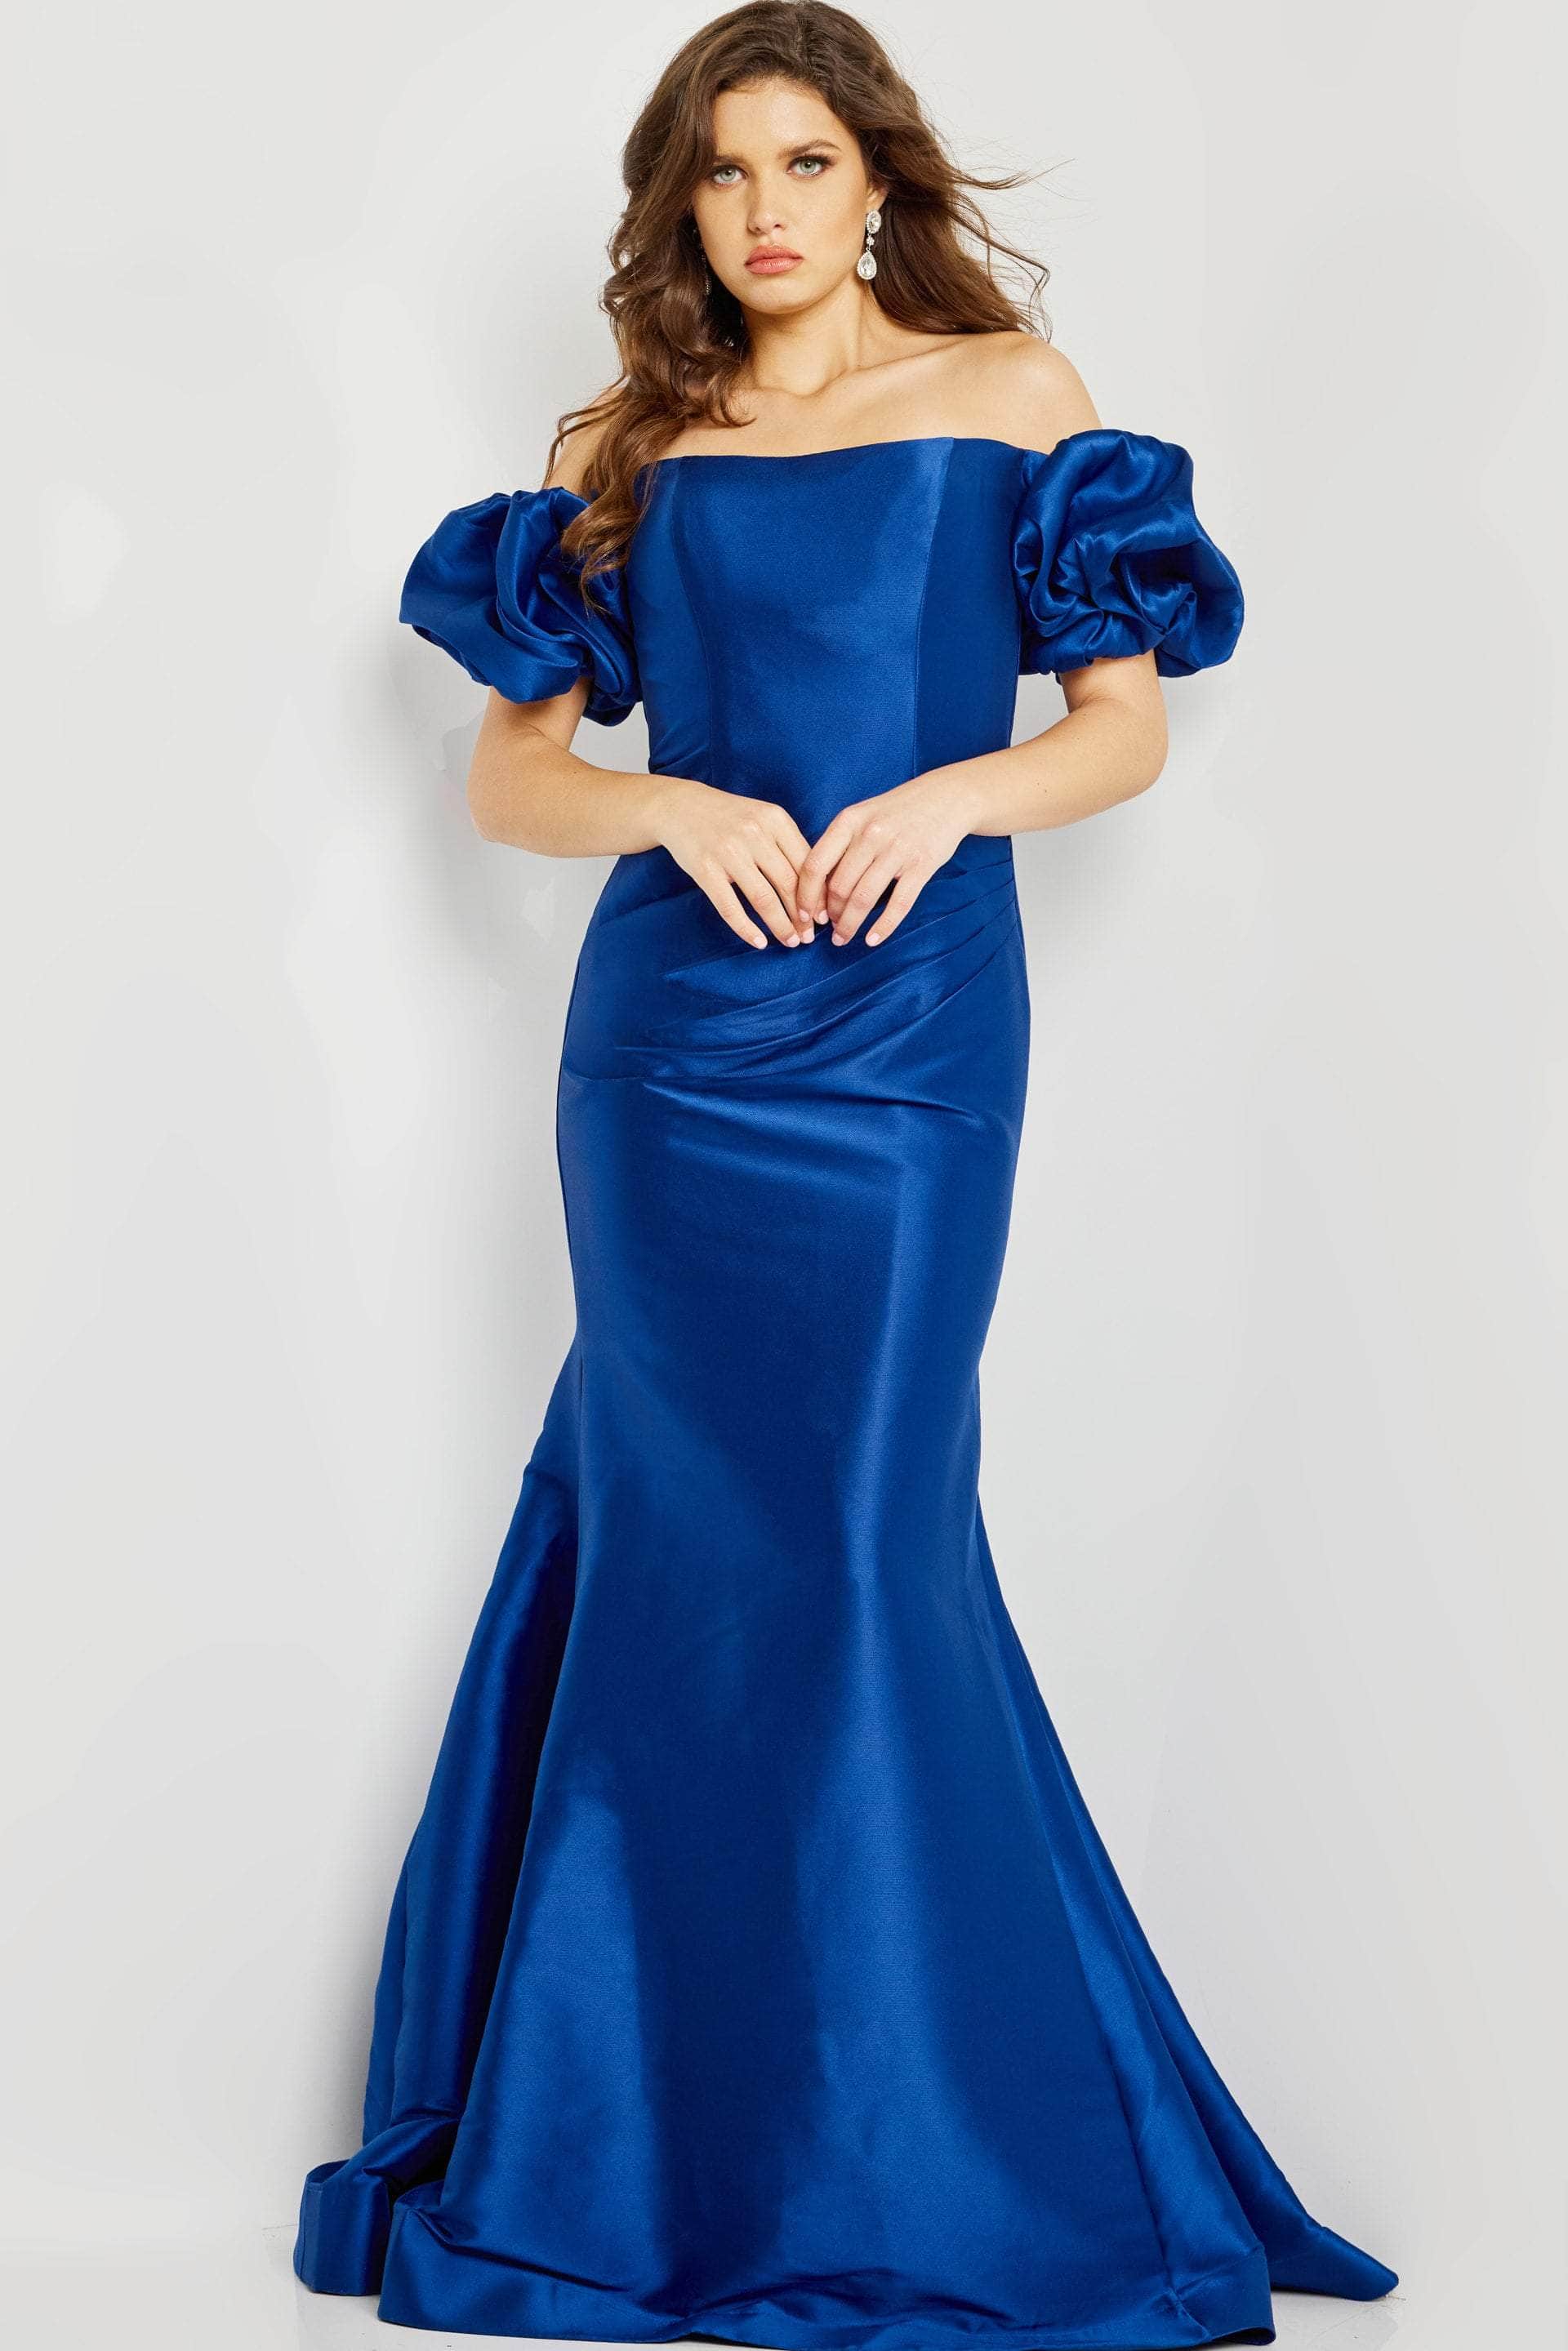 VÉV Collections Blue Marble/Tye Dye Dress Large